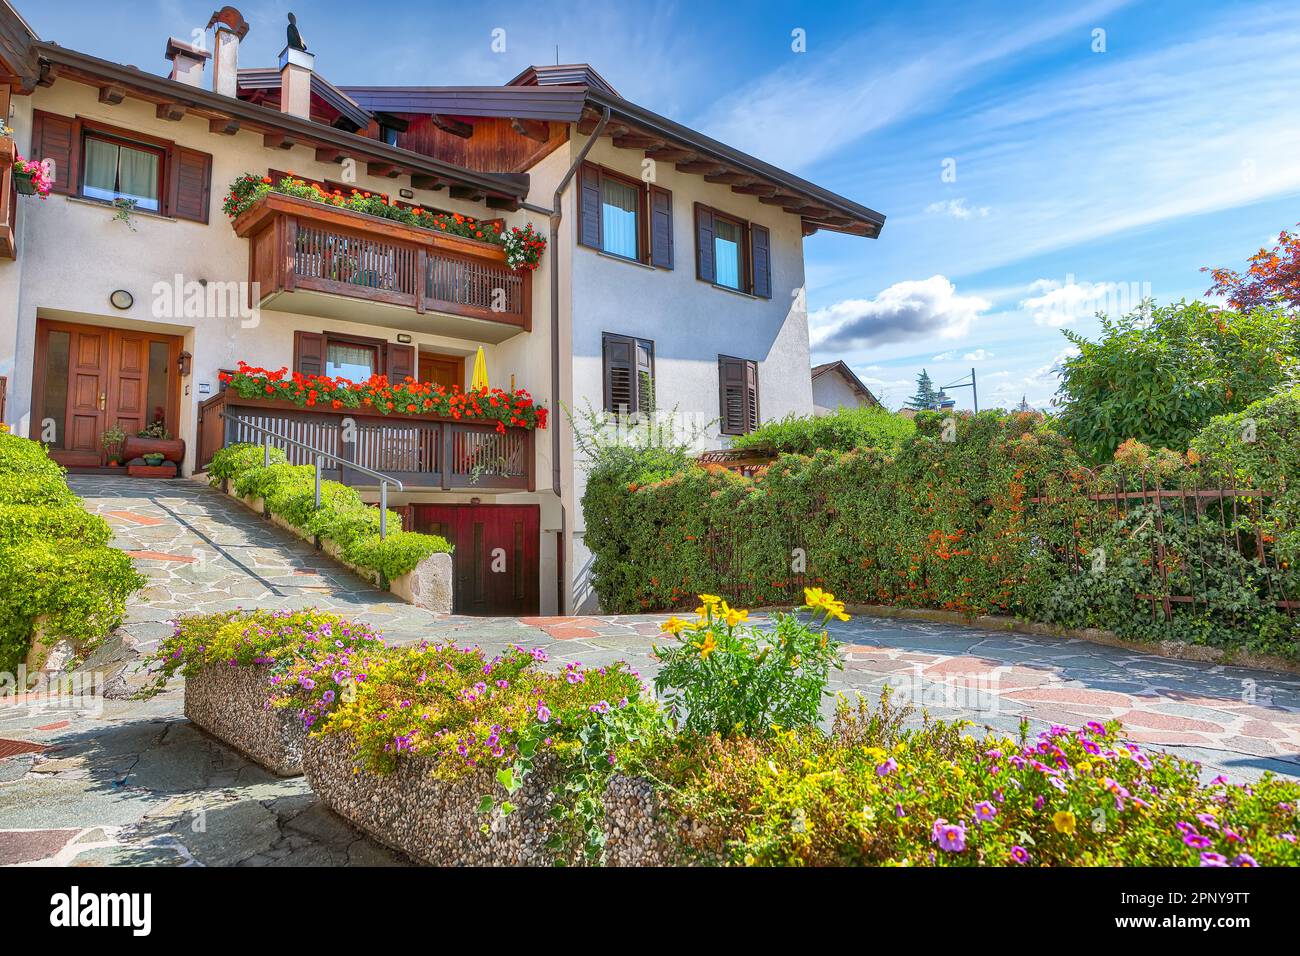 Tolle Aussicht auf traditionelle alpine Häuser mit Blumen auf dem Balkon der Stadt Cles. Standort: Cles, Region Trentino-Südtirol, Italien, Europa Stockfoto